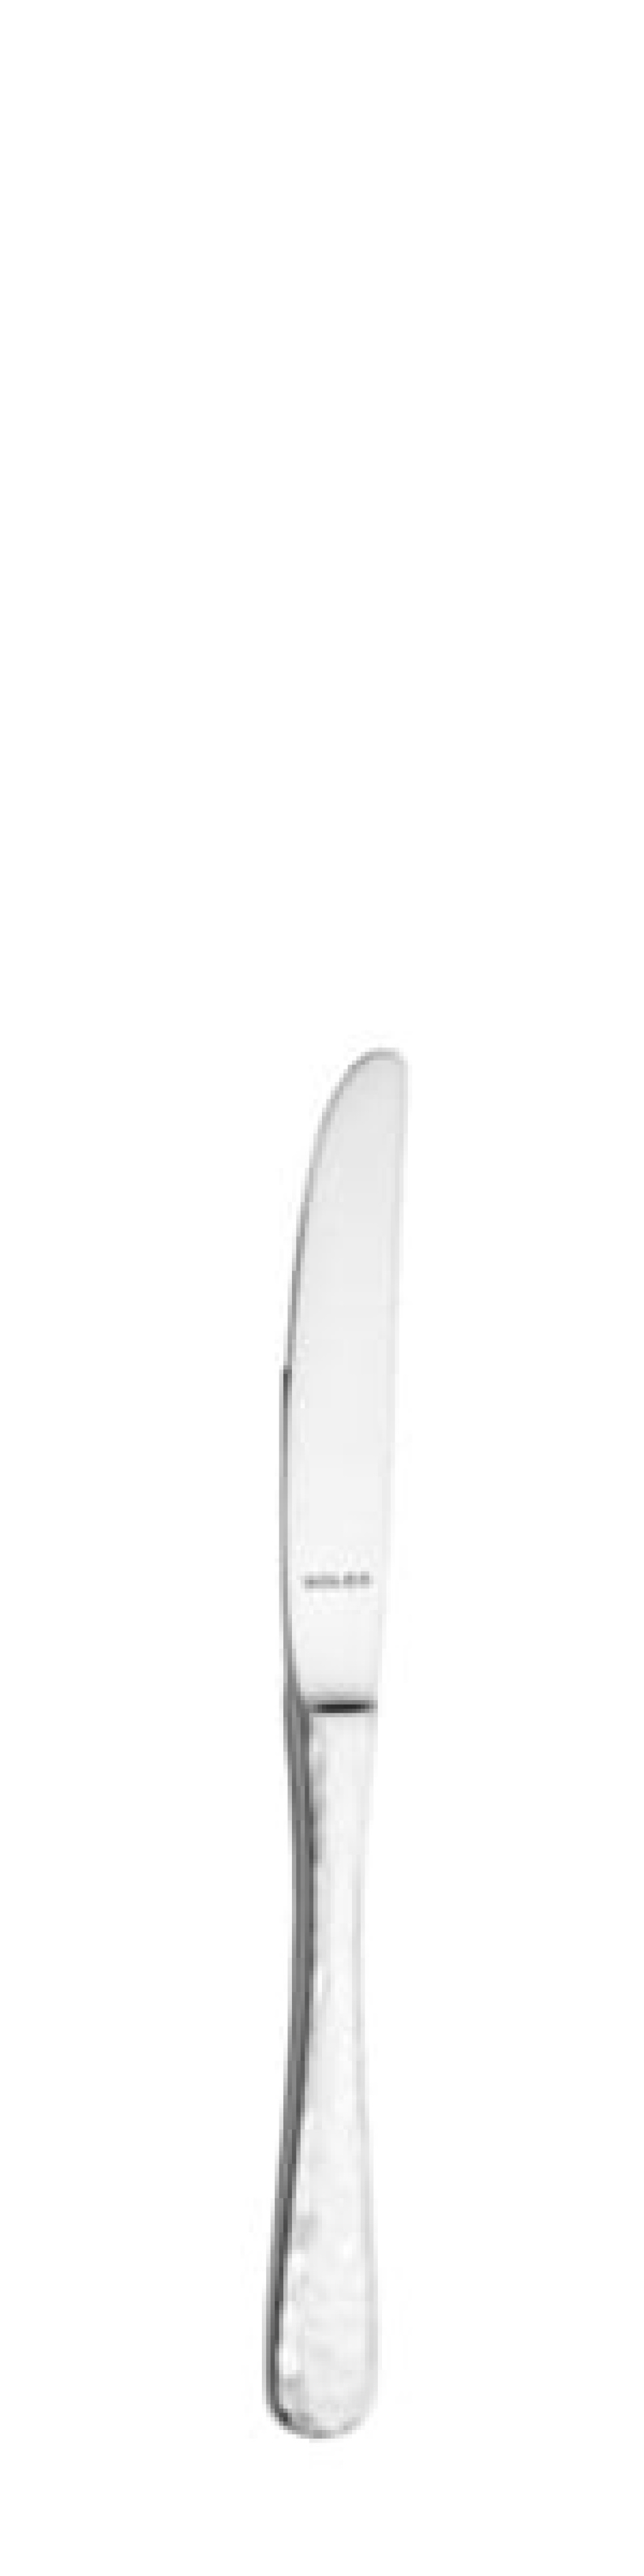 Nóż do masła Lena 170 mm - Solex w grupie Nakrycie stołu / Sztućce / Noże do masła w The Kitchen Lab (1284-21620)